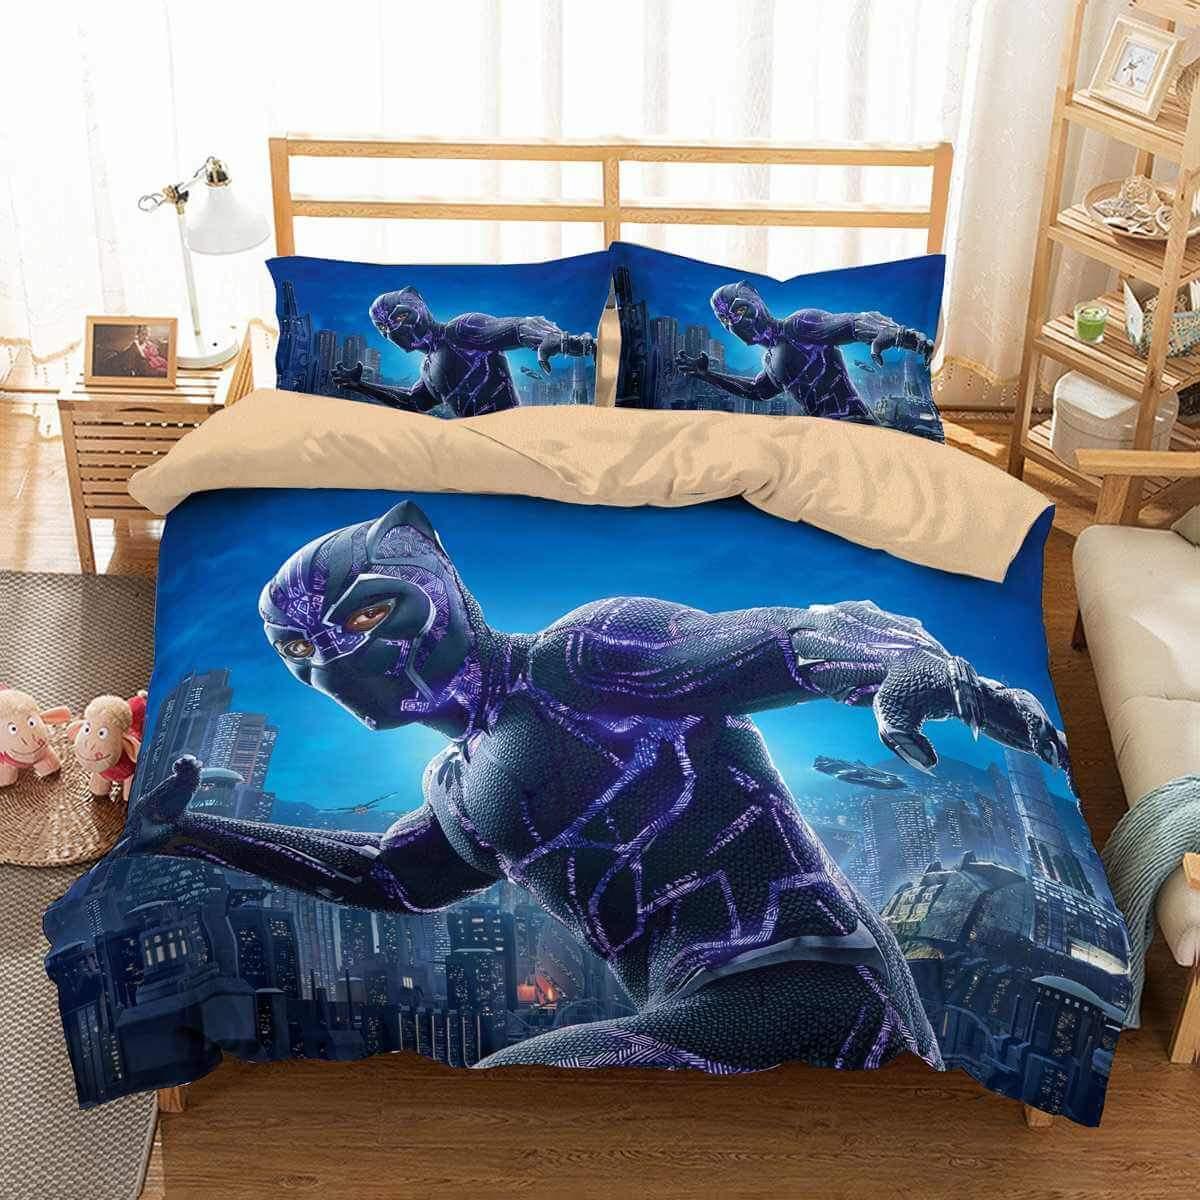 Black Panther Bedding Set